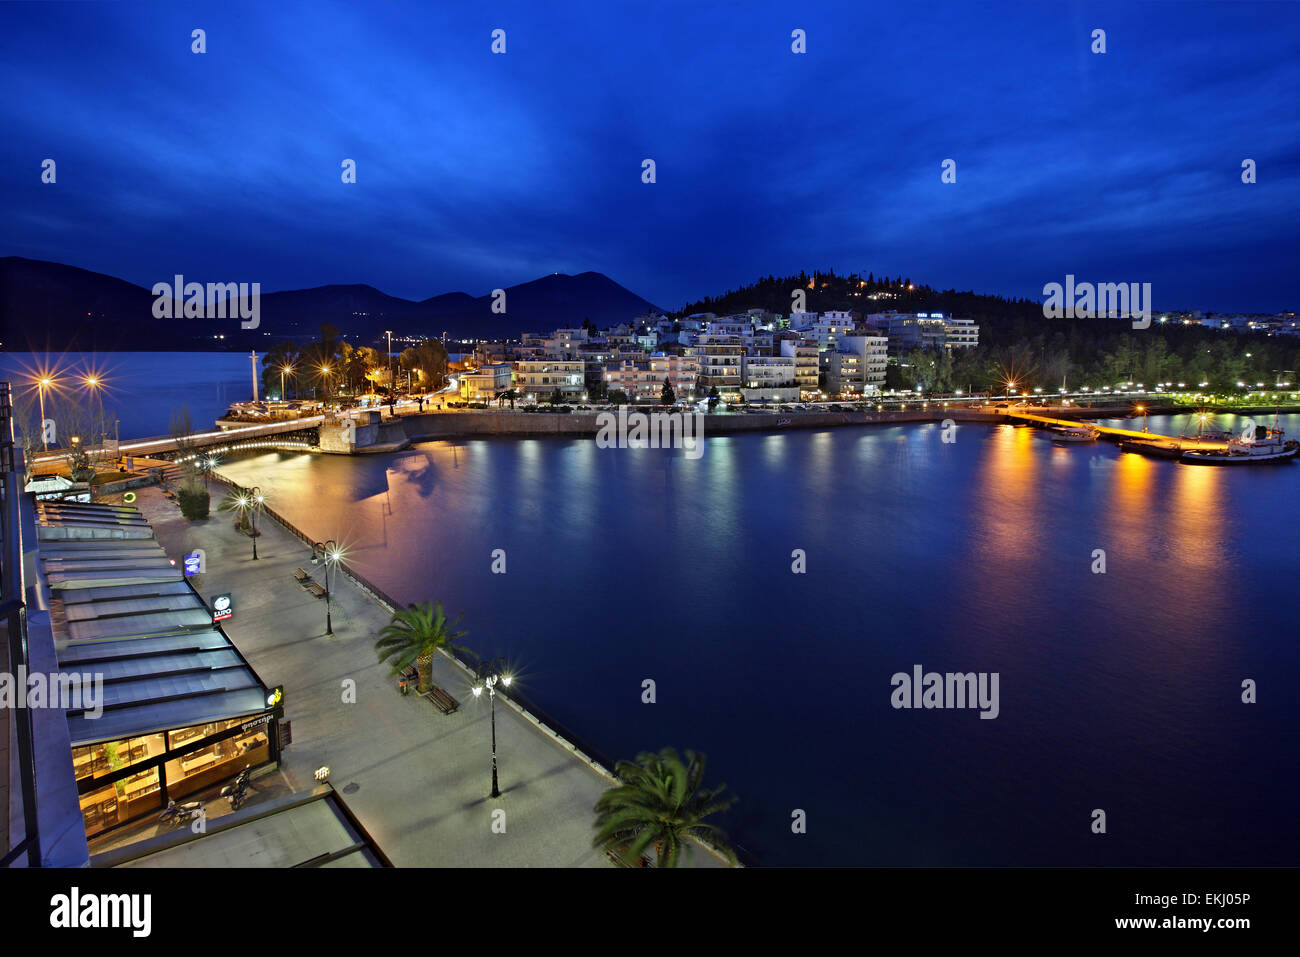 Night view of Chalkis ("Chalkida") town, Evia ("Euboea") island, Greece  Stock Photo - Alamy